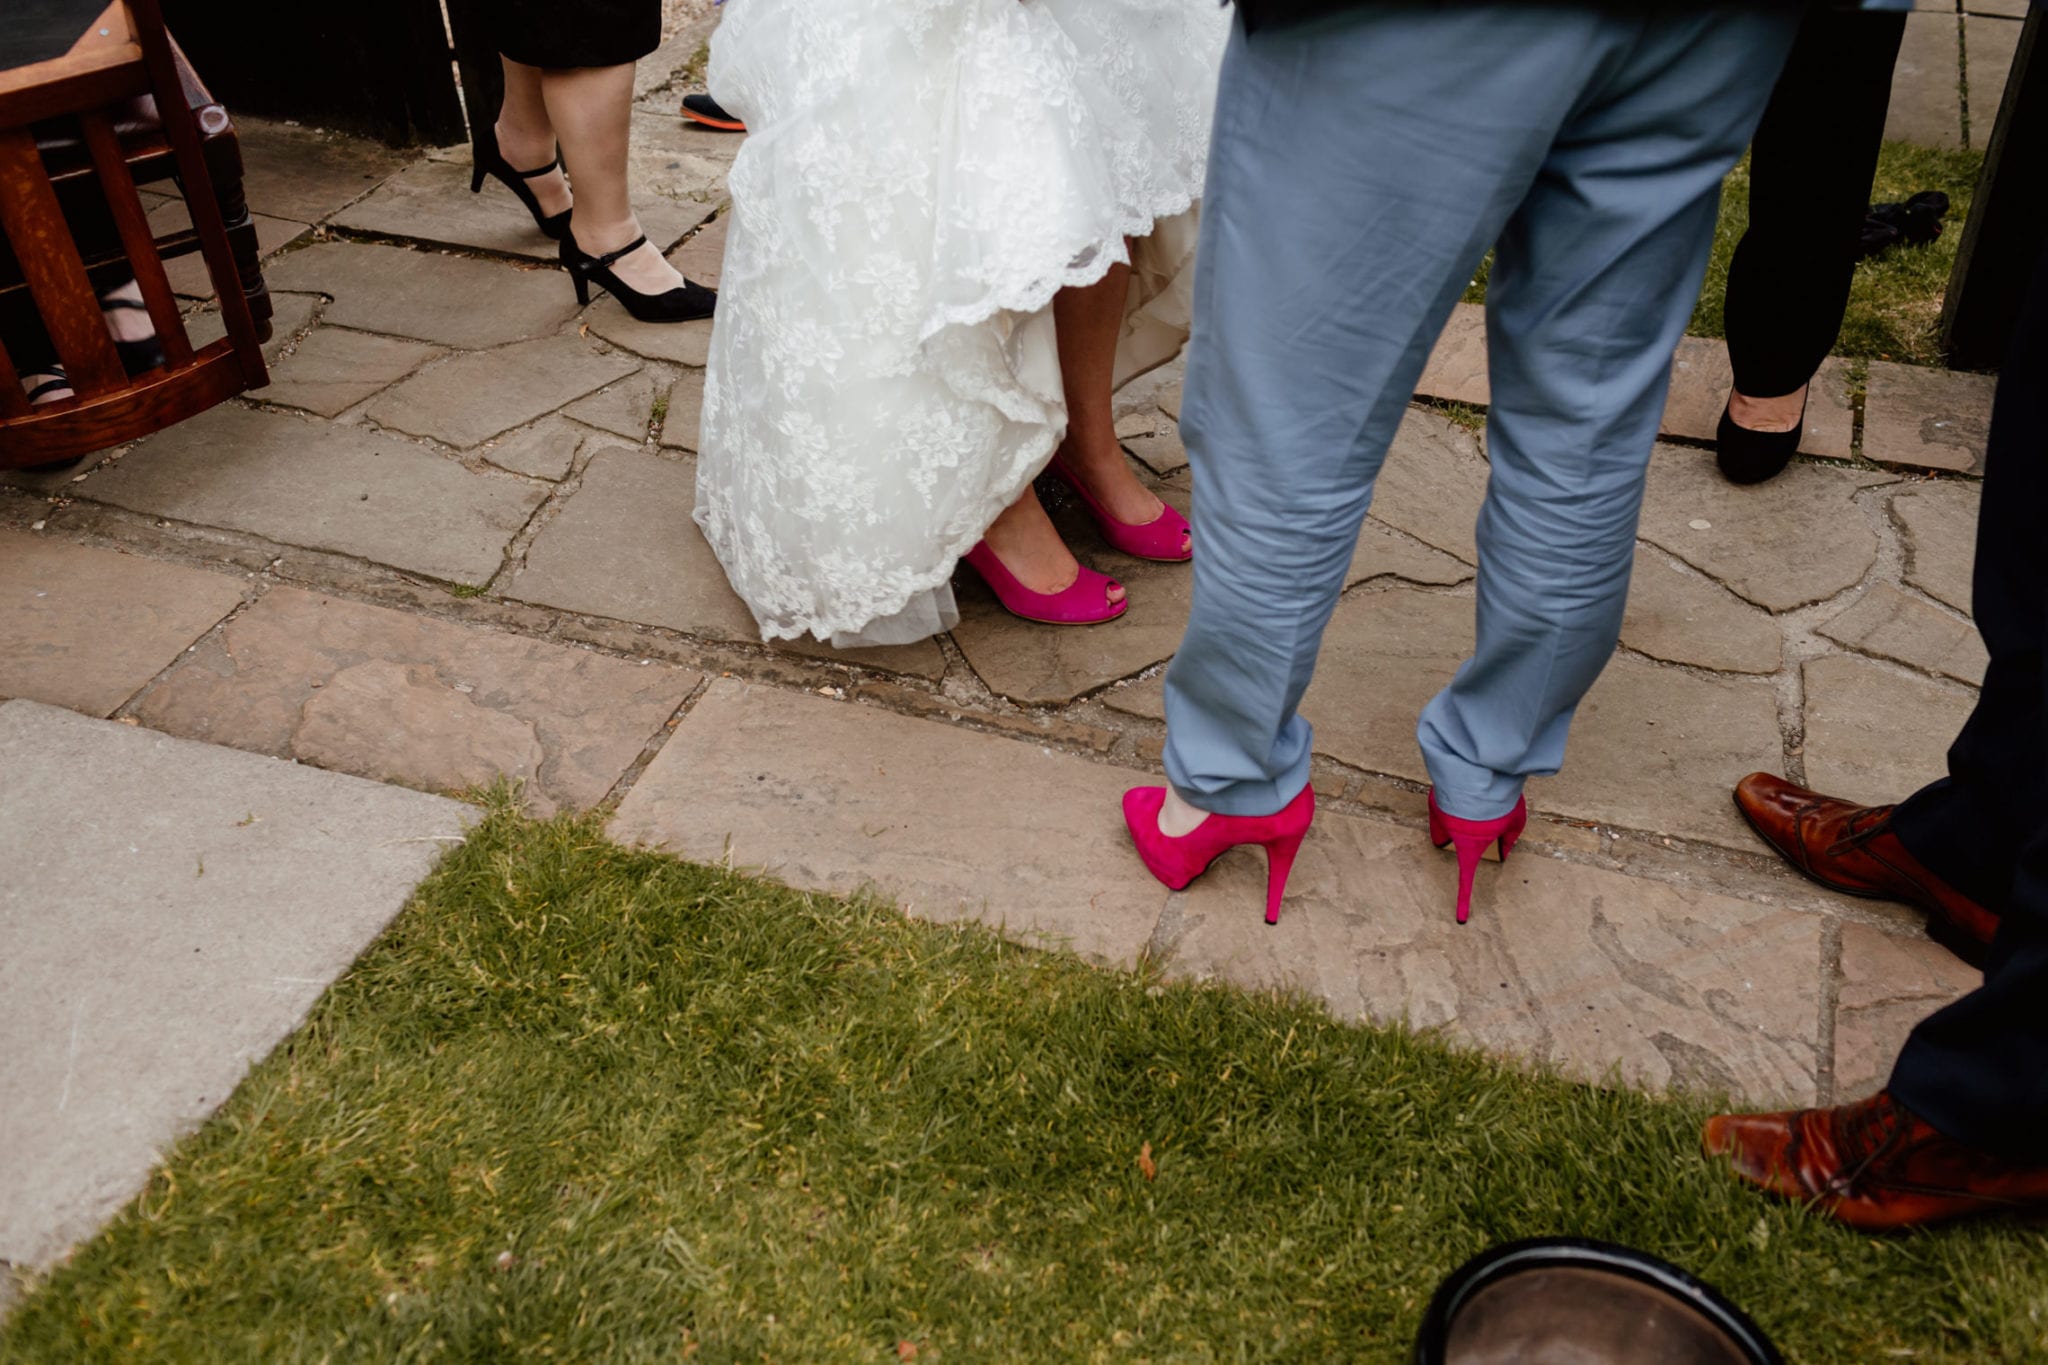 Man wearing heels at wedding -